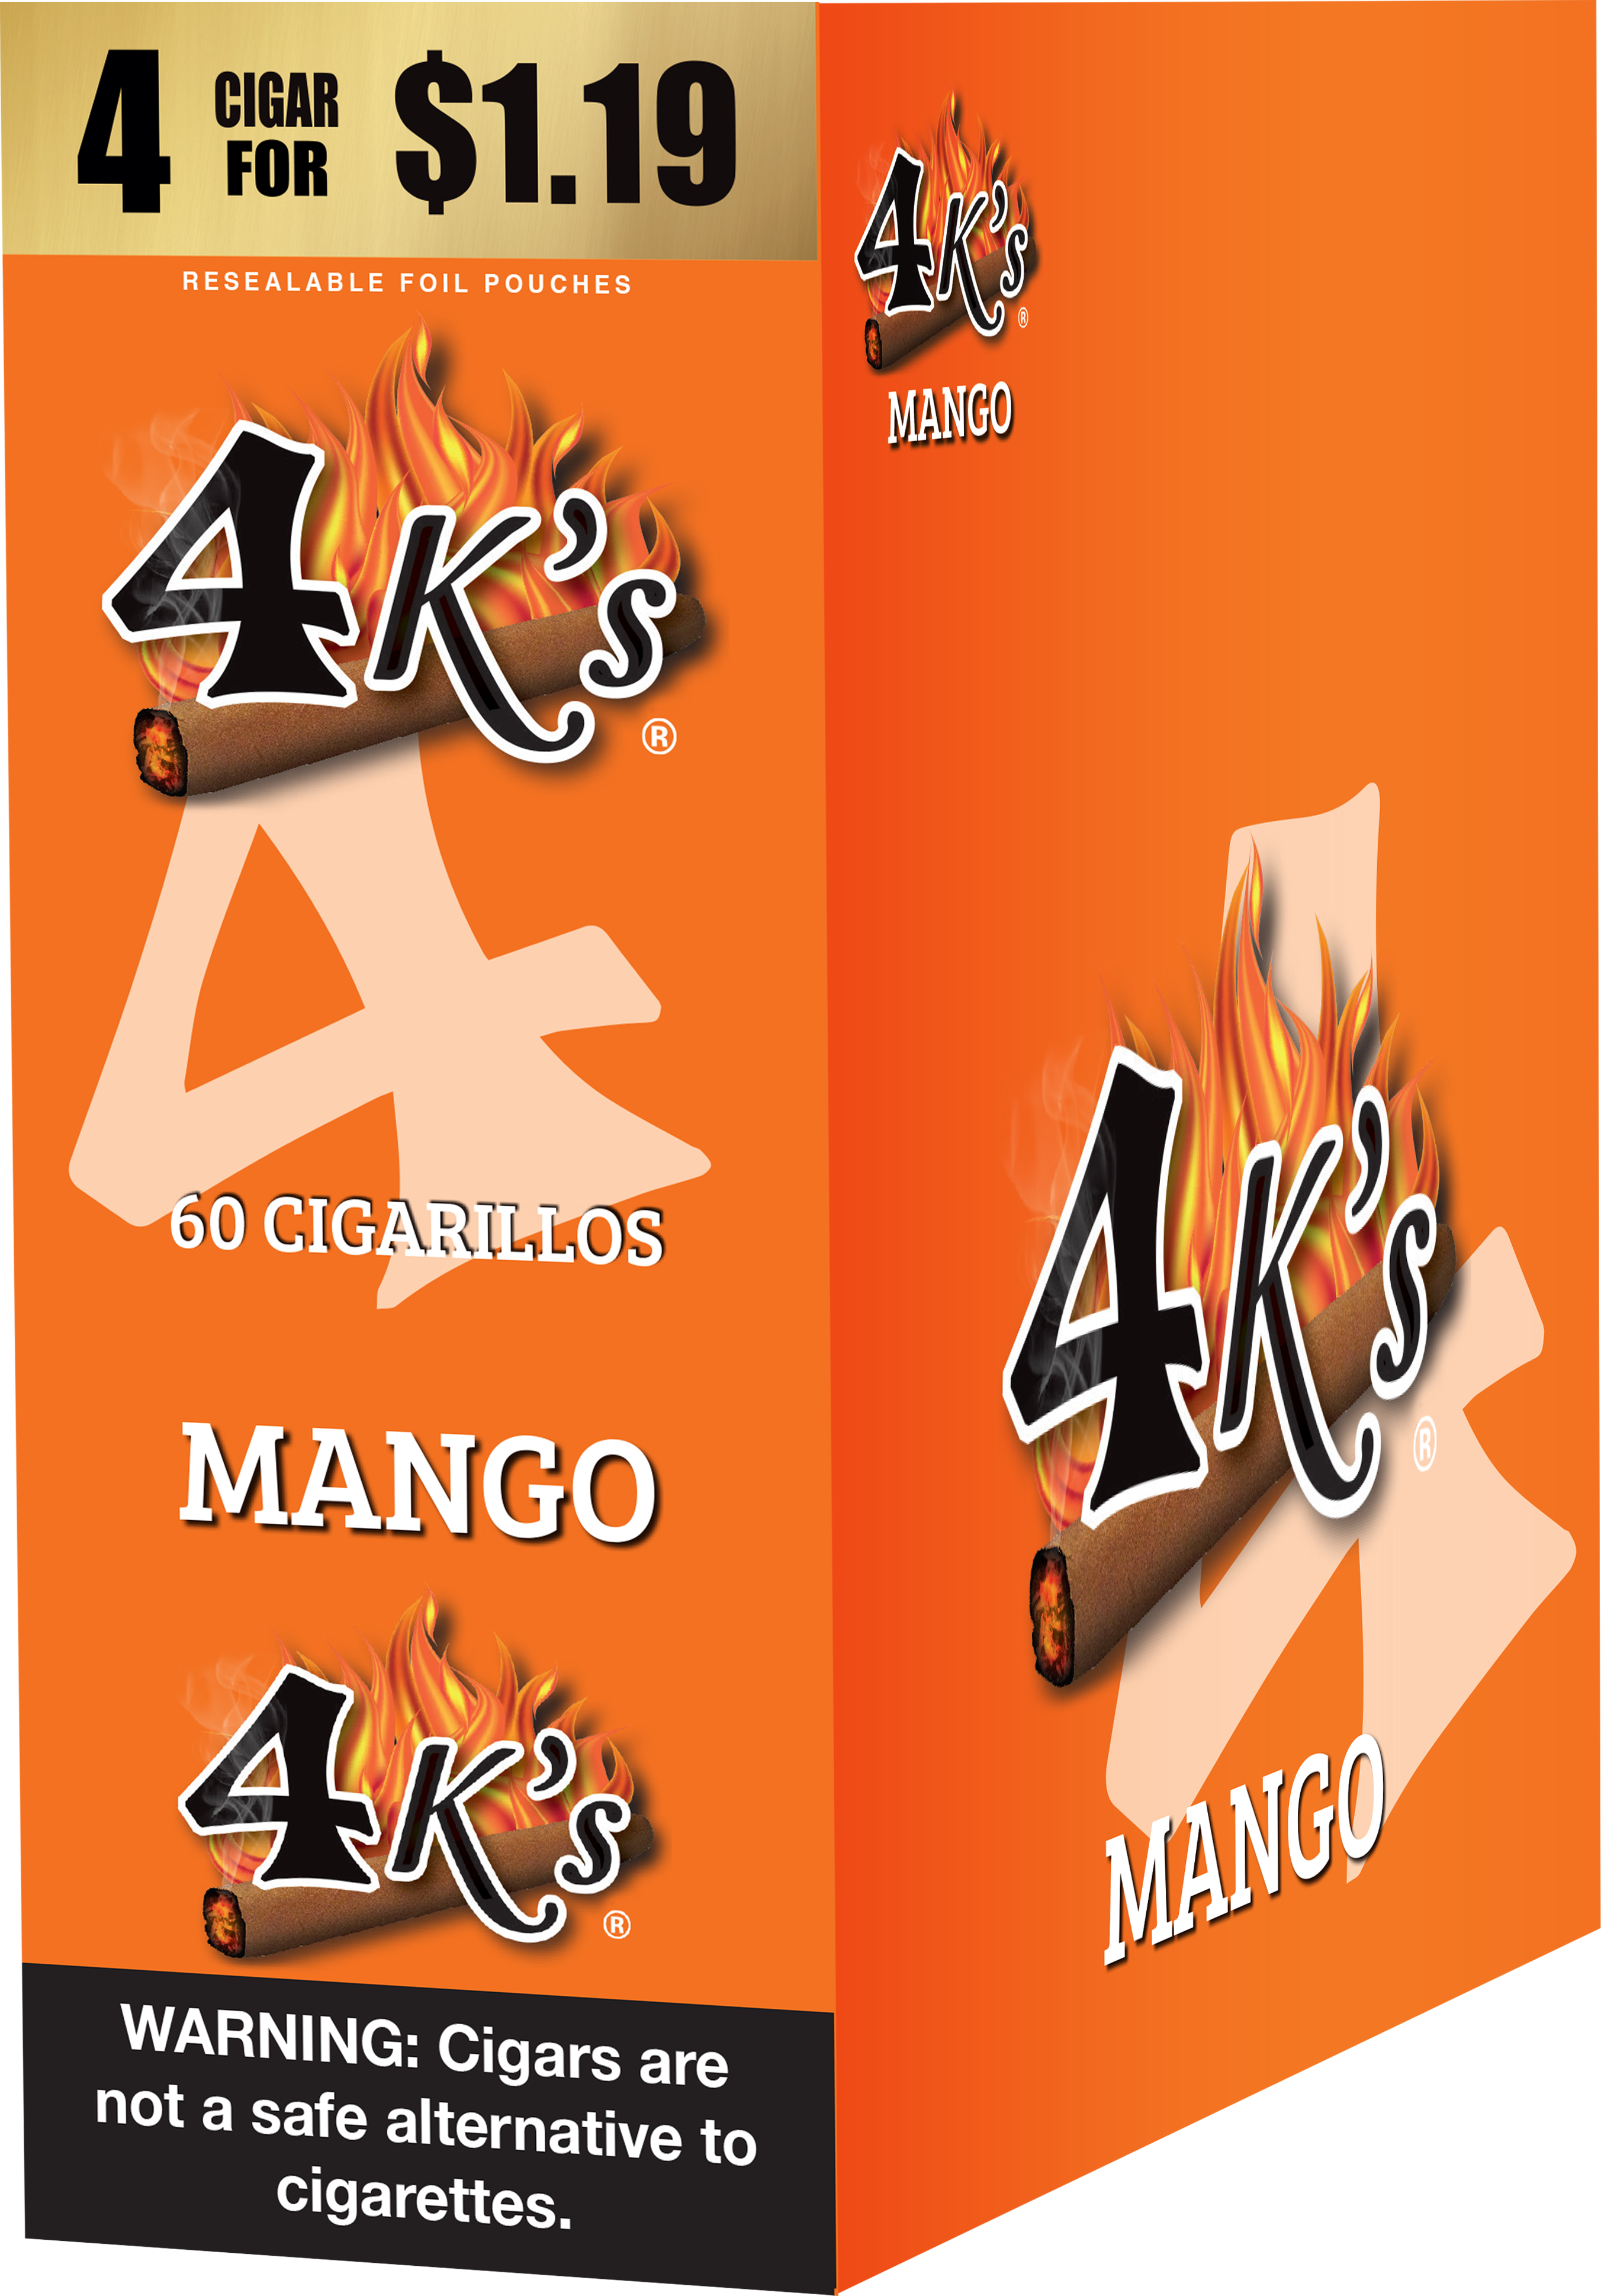 4kings mango 4/$1.19 f.p. 15/4pk